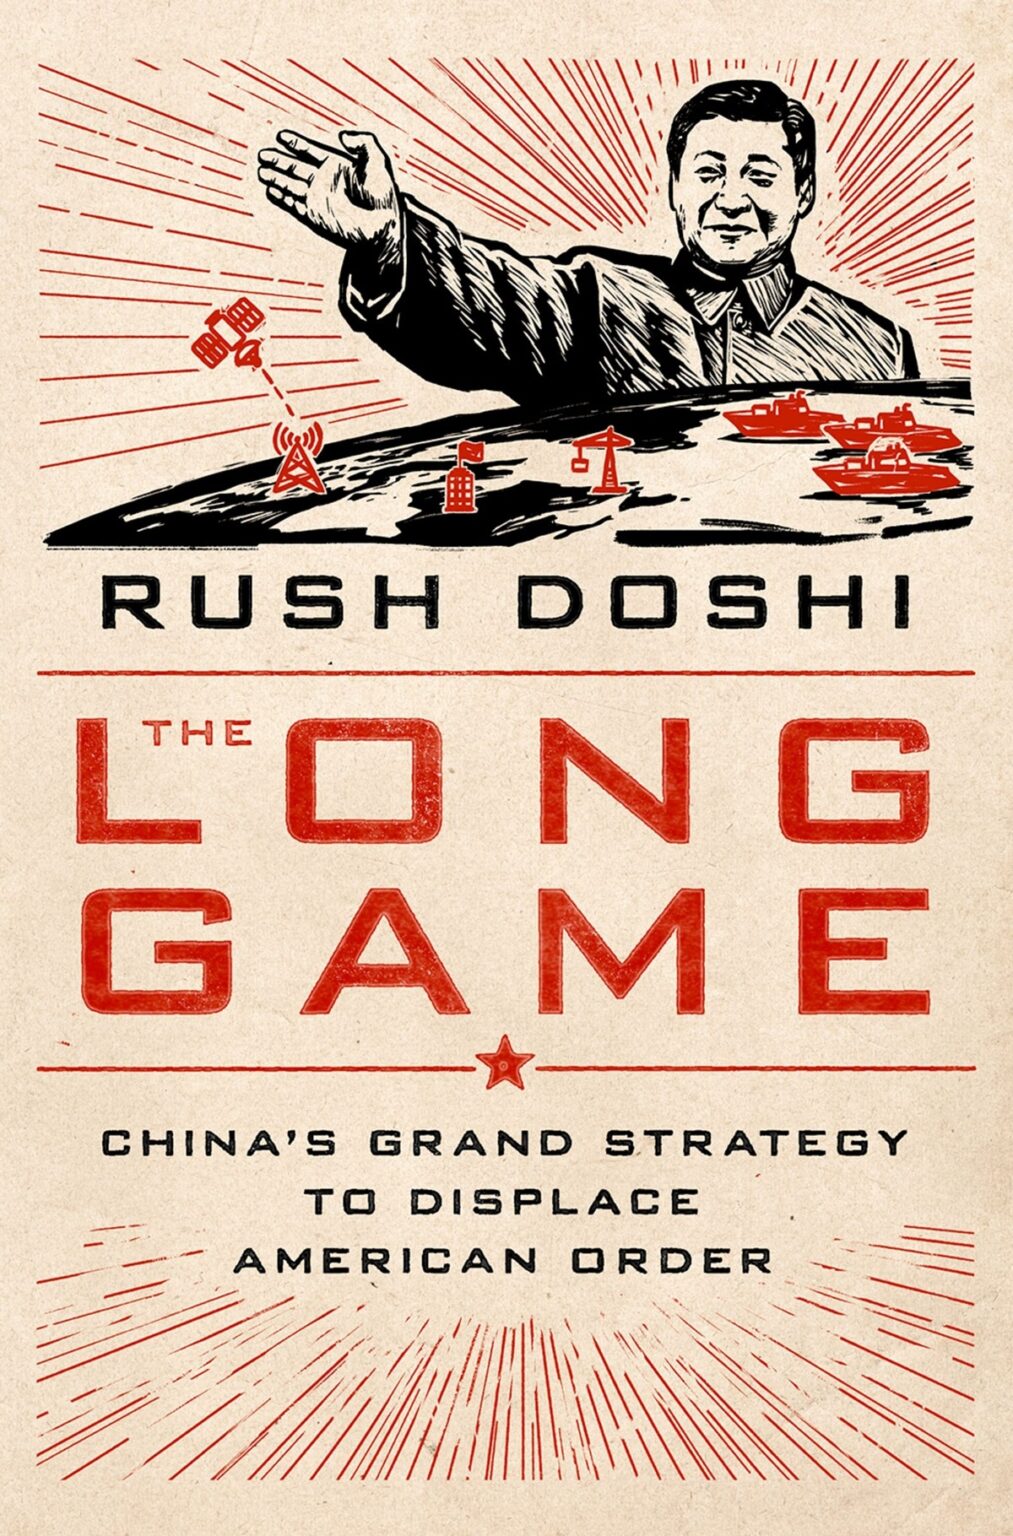 (Rush Doshi) The Long Game